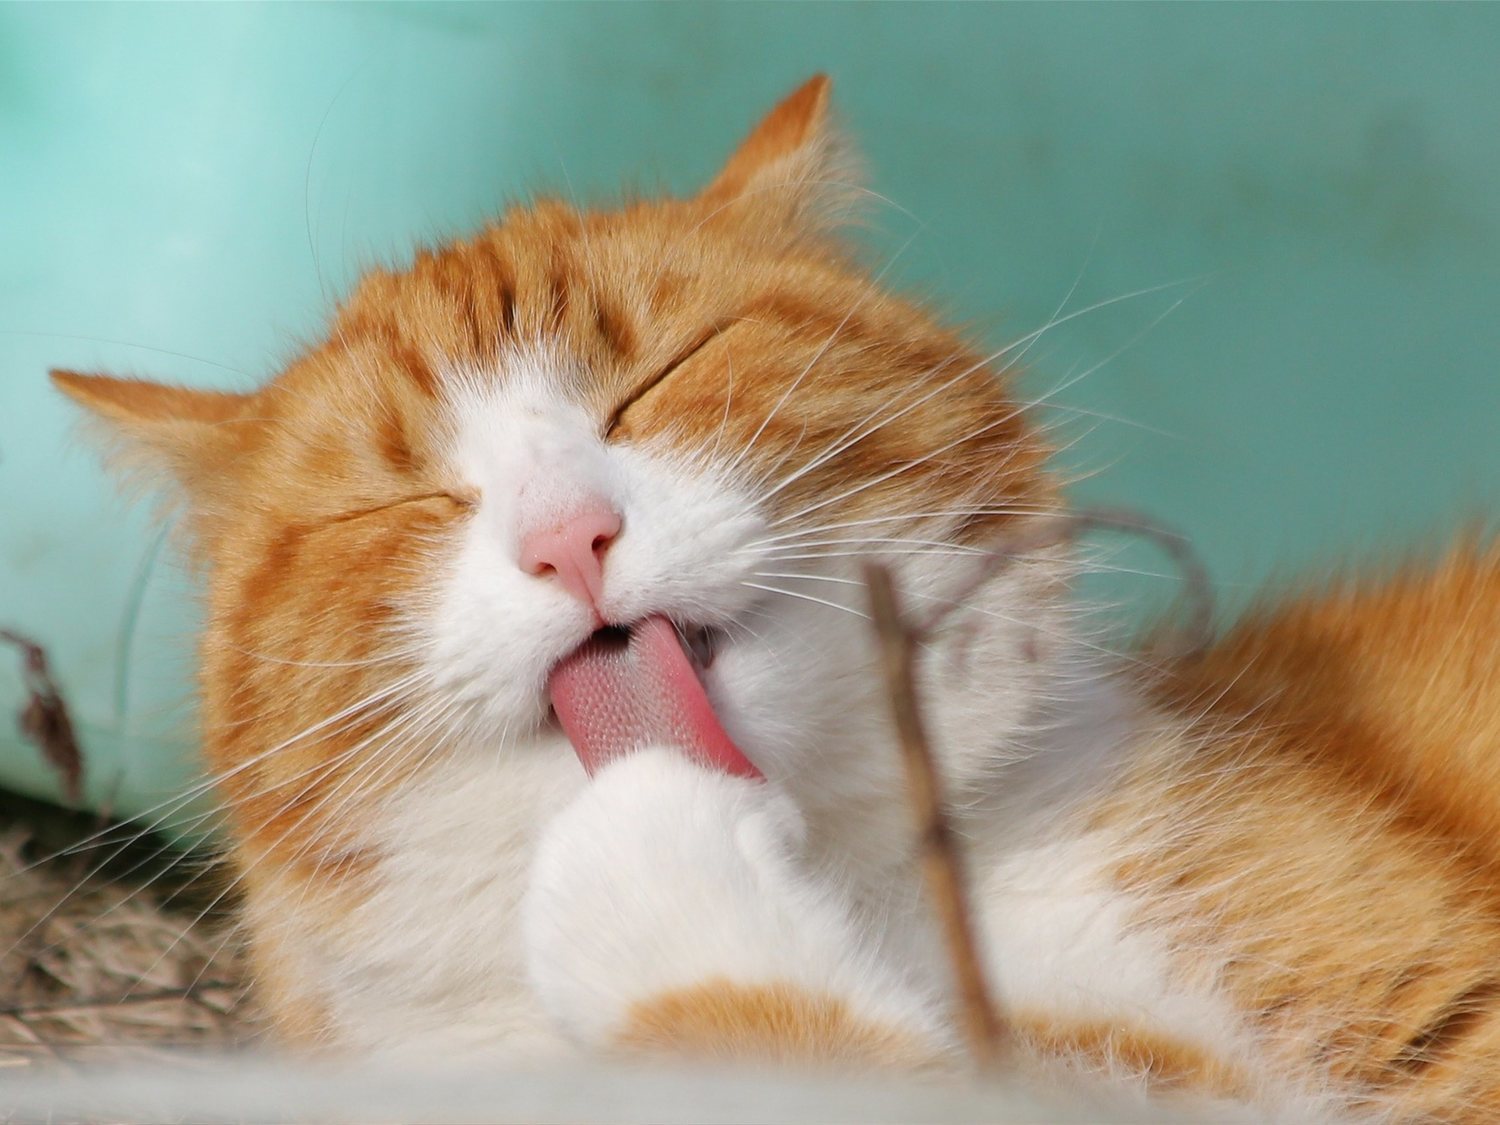 Esta es la forma en la que debes acariciar a tu gato para que sea feliz, según la ciencia